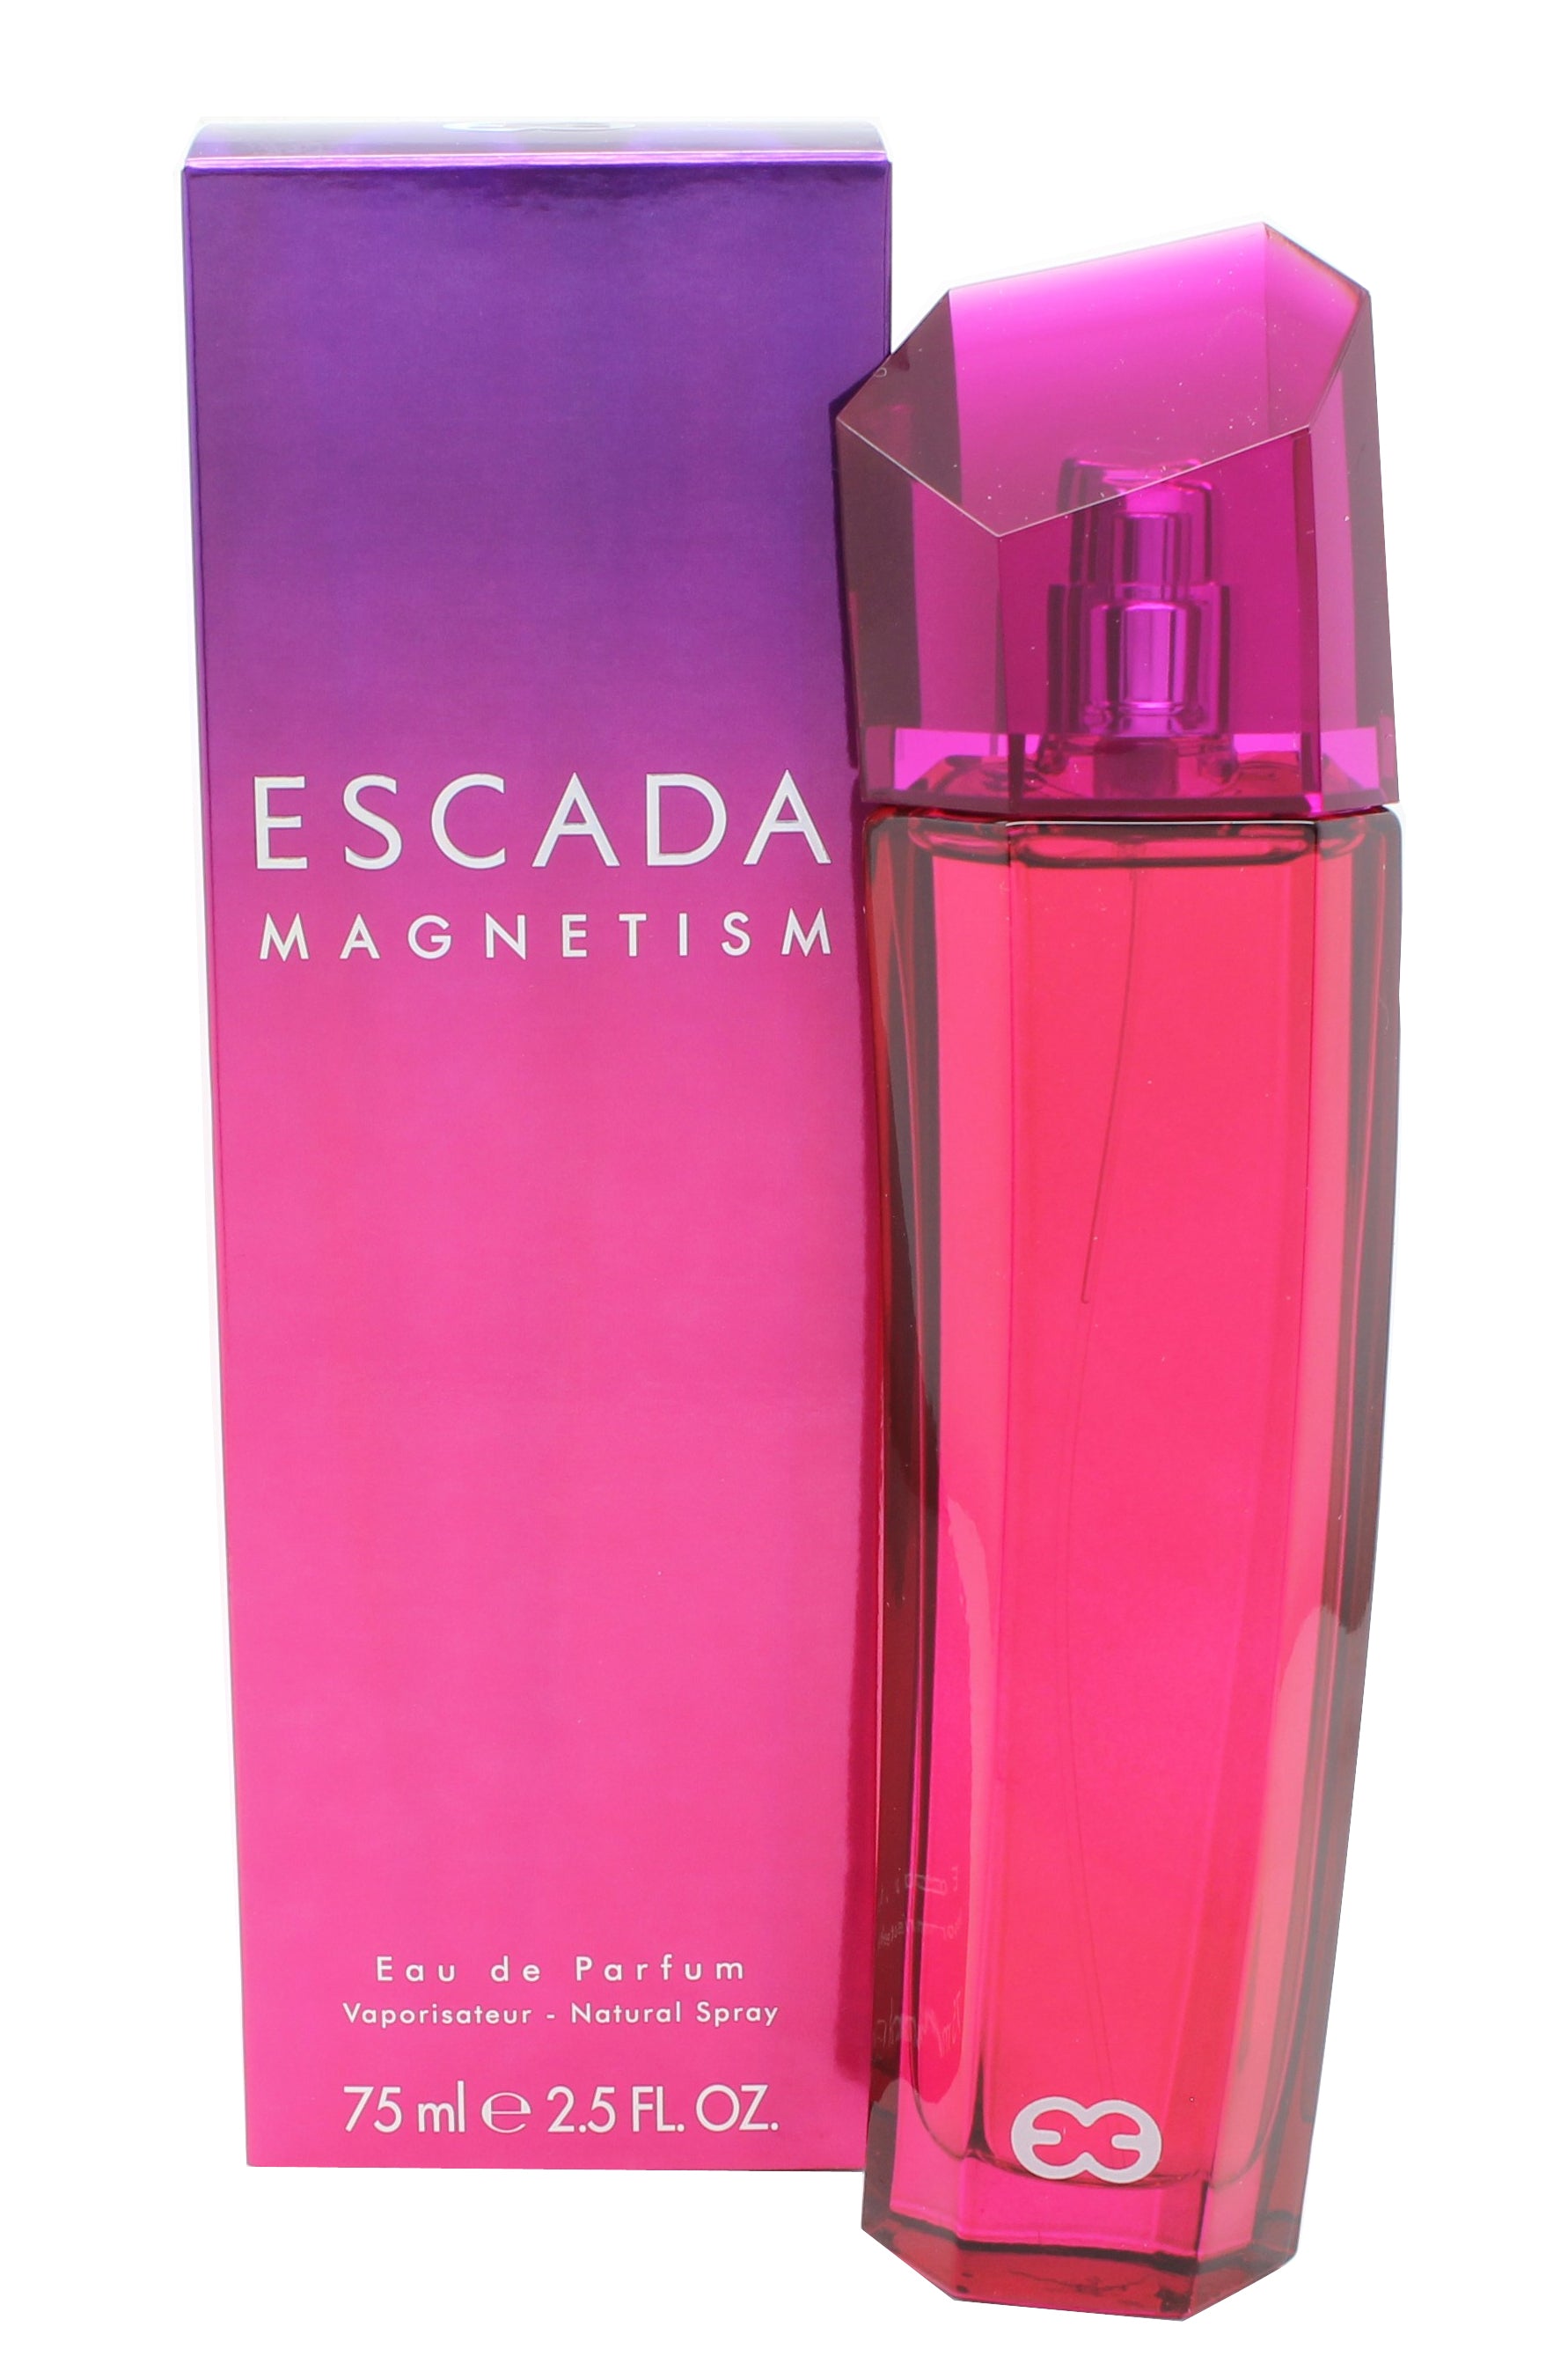 View Escada Magnetism Eau de Parfum 75ml Spray information